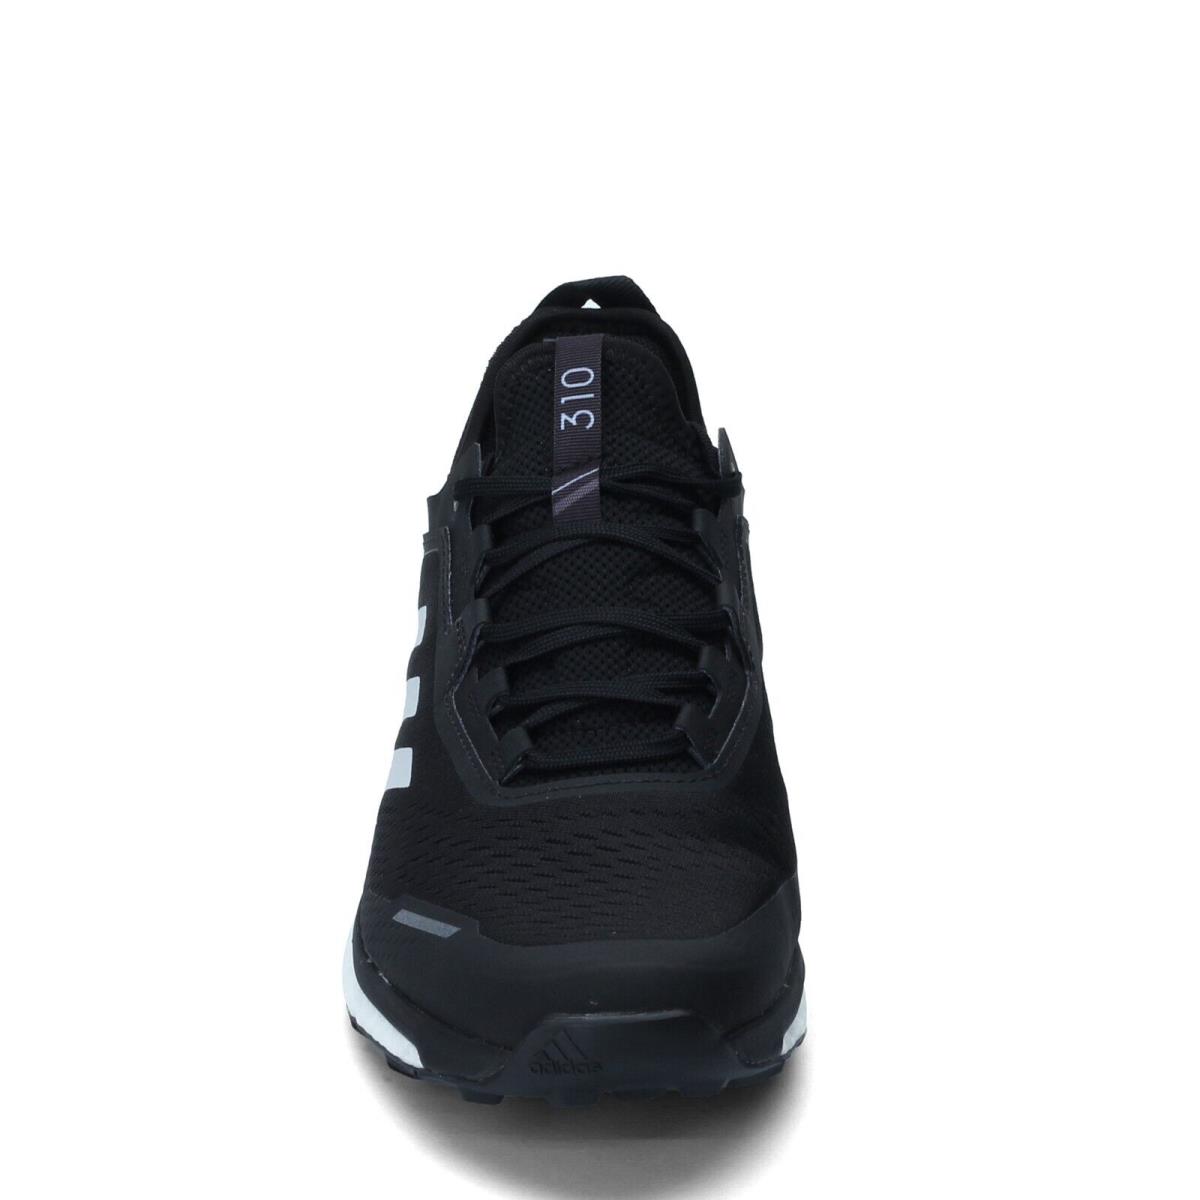 Adidas shoes TERREX Agravic Flow - Black/Grey/White 2